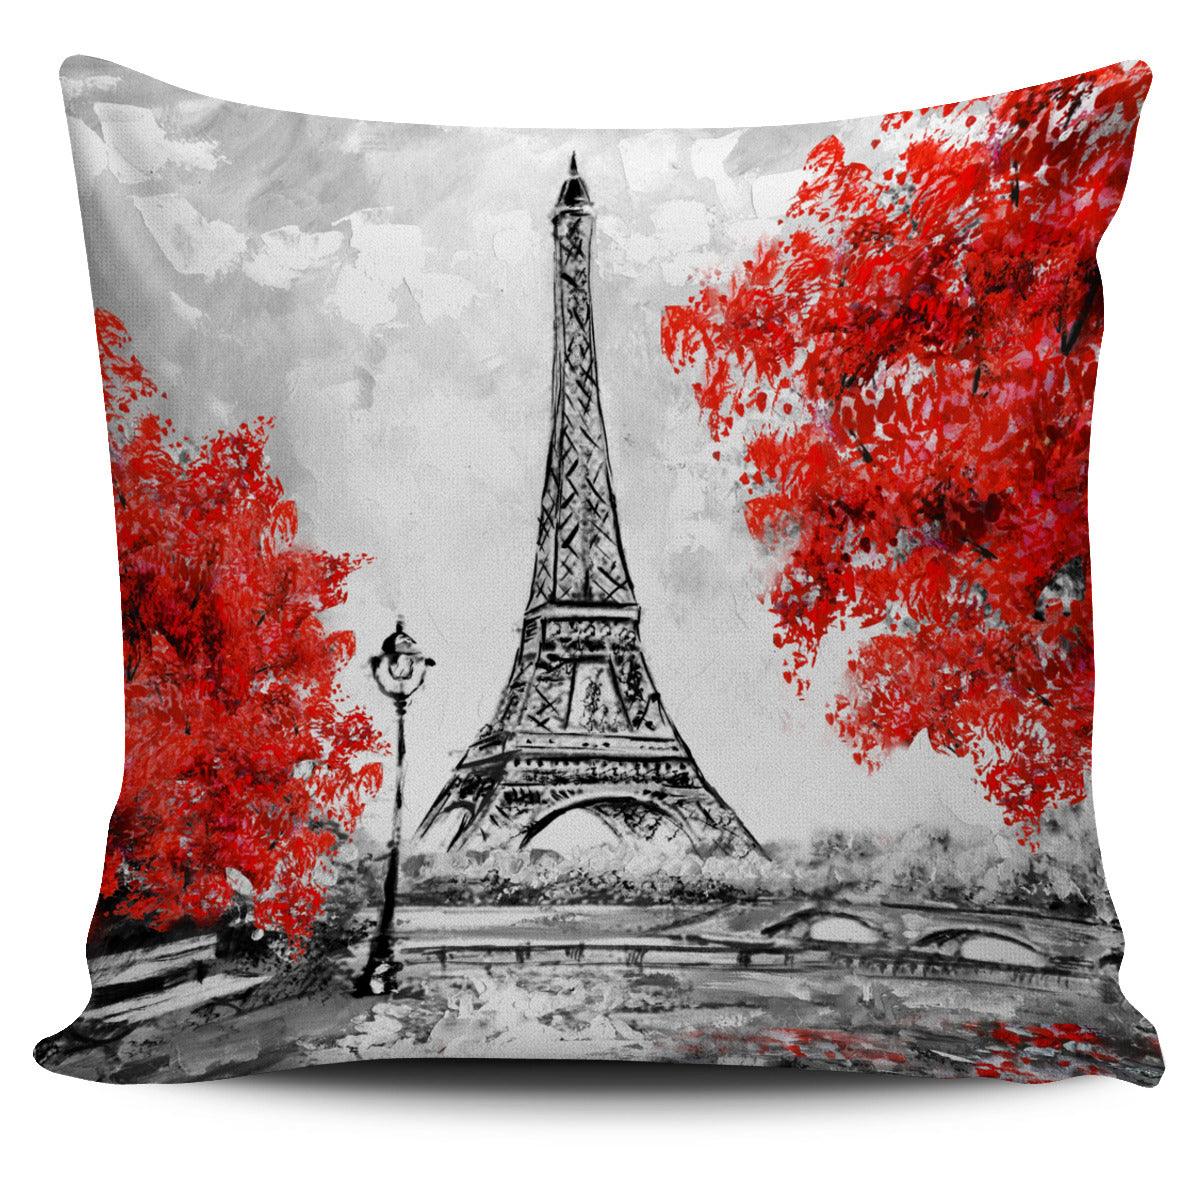 Paris In Red